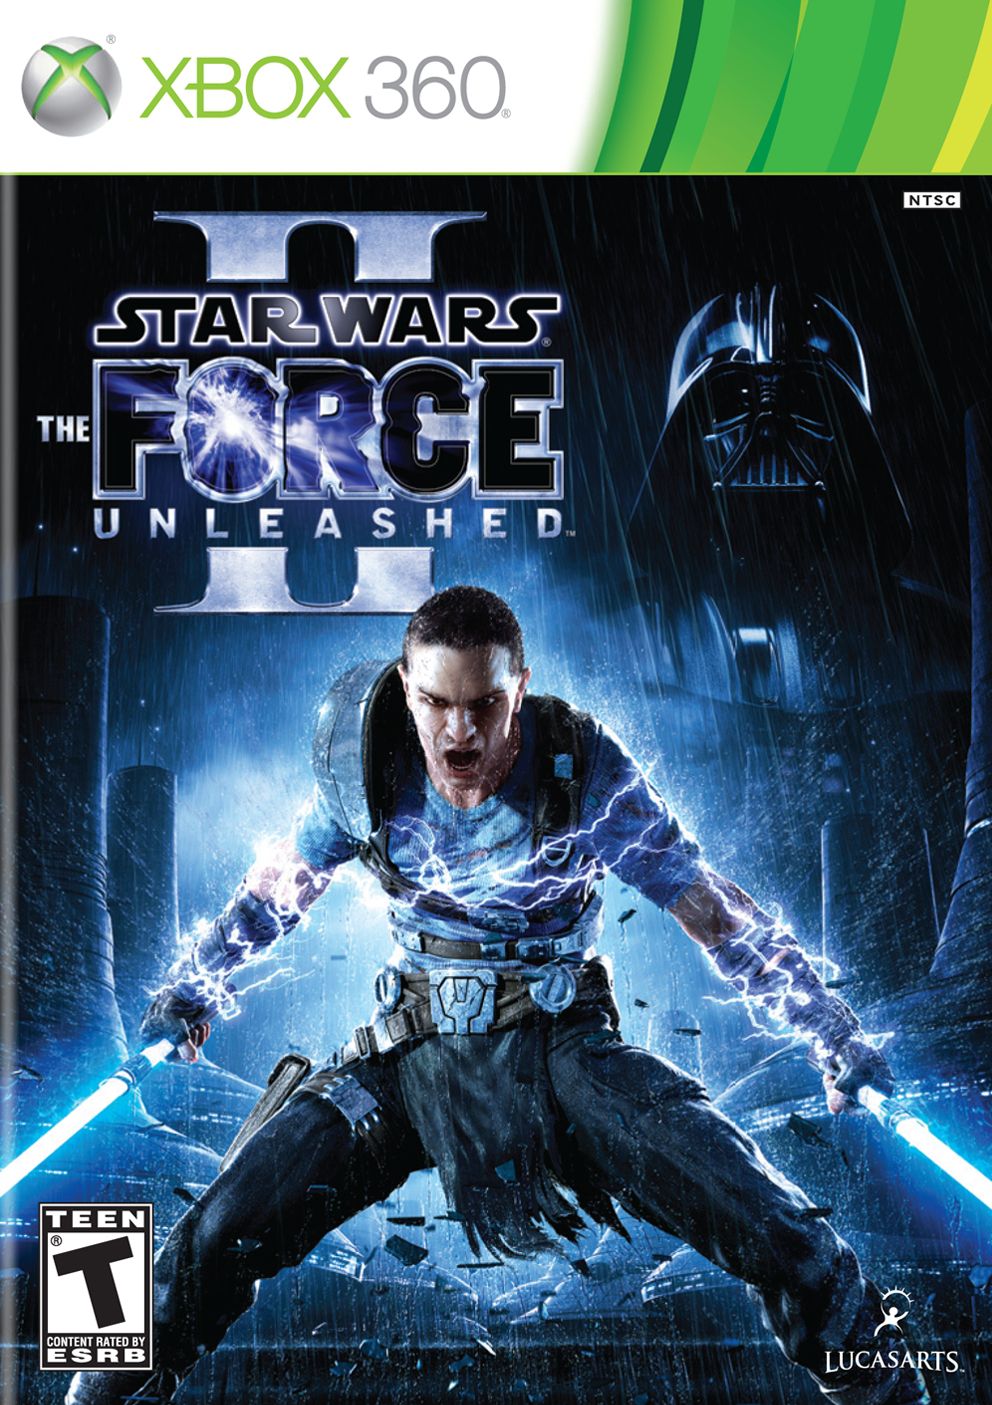 Bar Obi-Wan: CRÍTICA: Star Wars: The Force Unleashed II [X360]